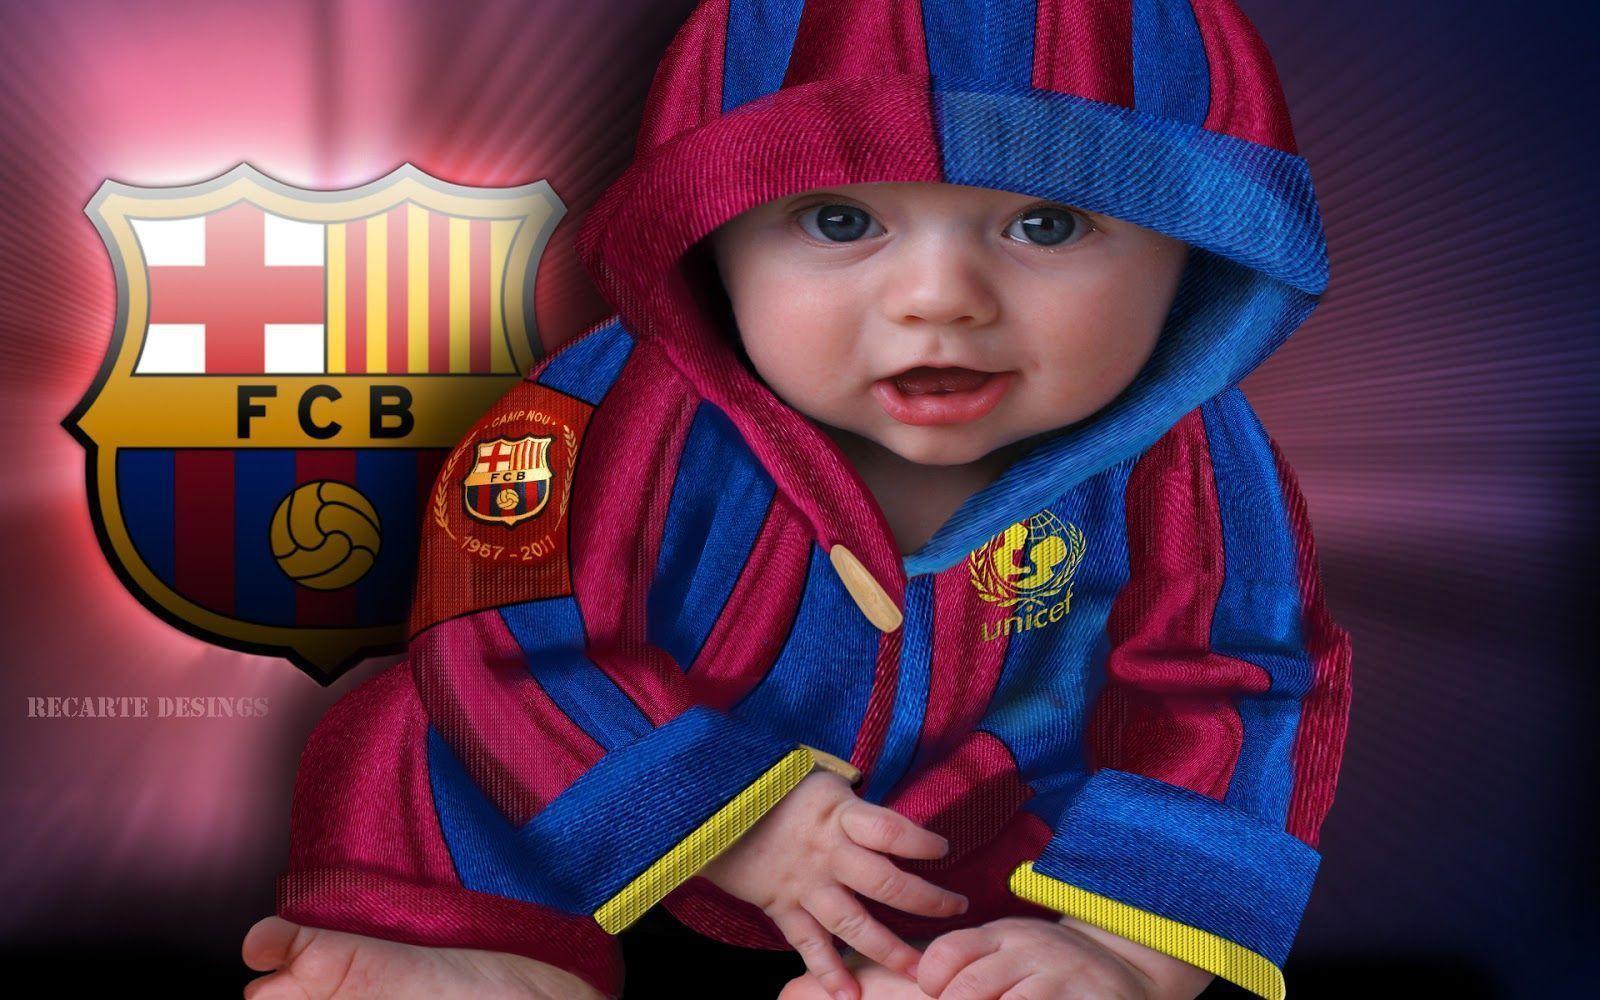 باشگاه فوتبال بارسلونا (FC Barcelona)